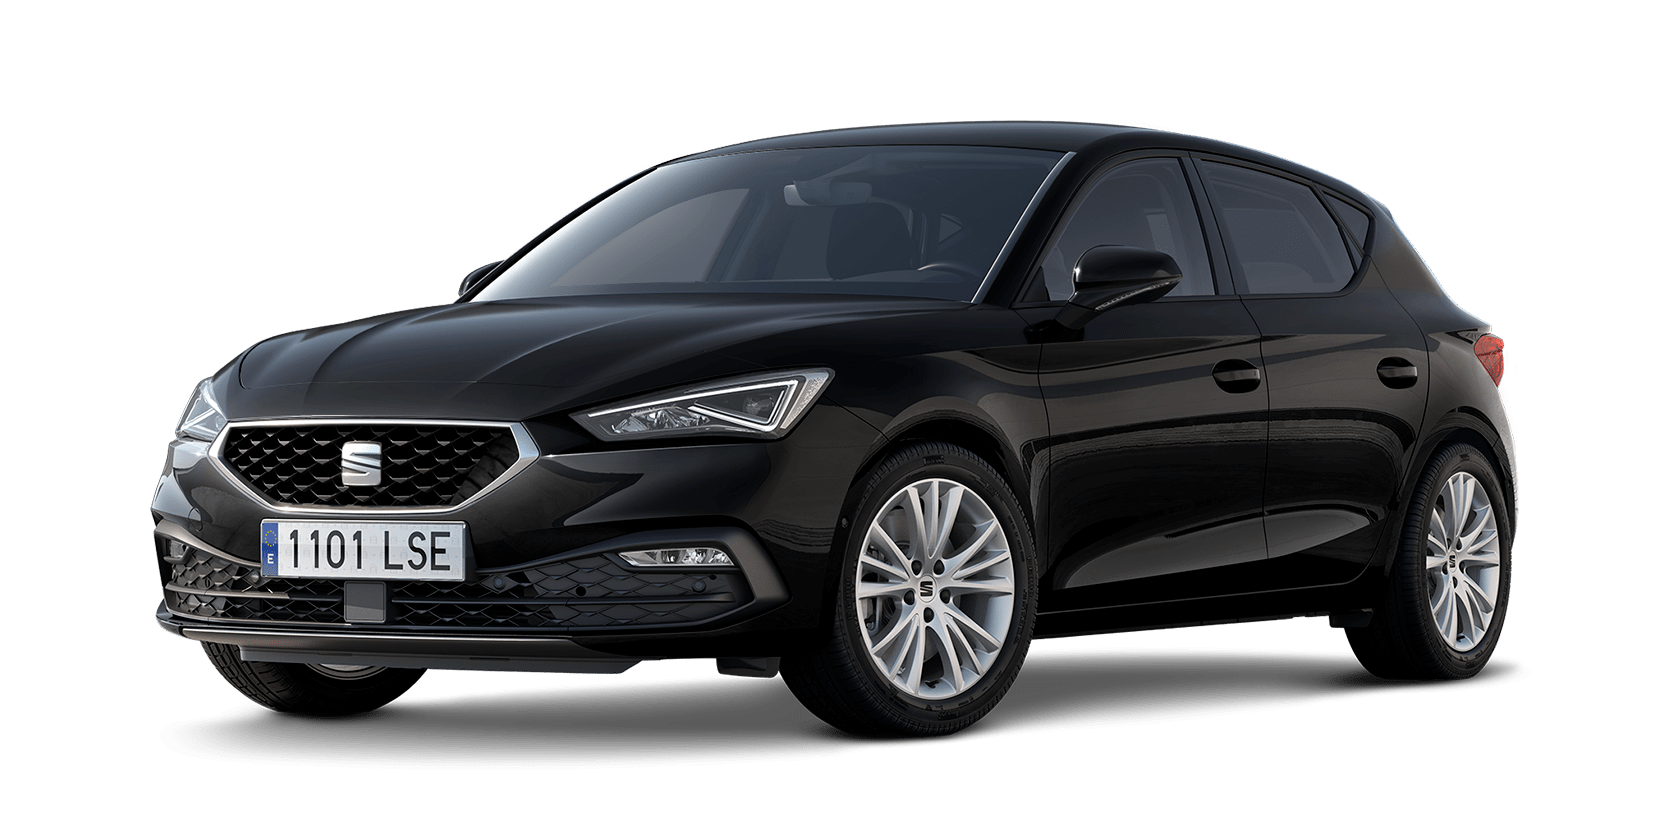 SEAT León: todos los precios, ofertas y versiones 